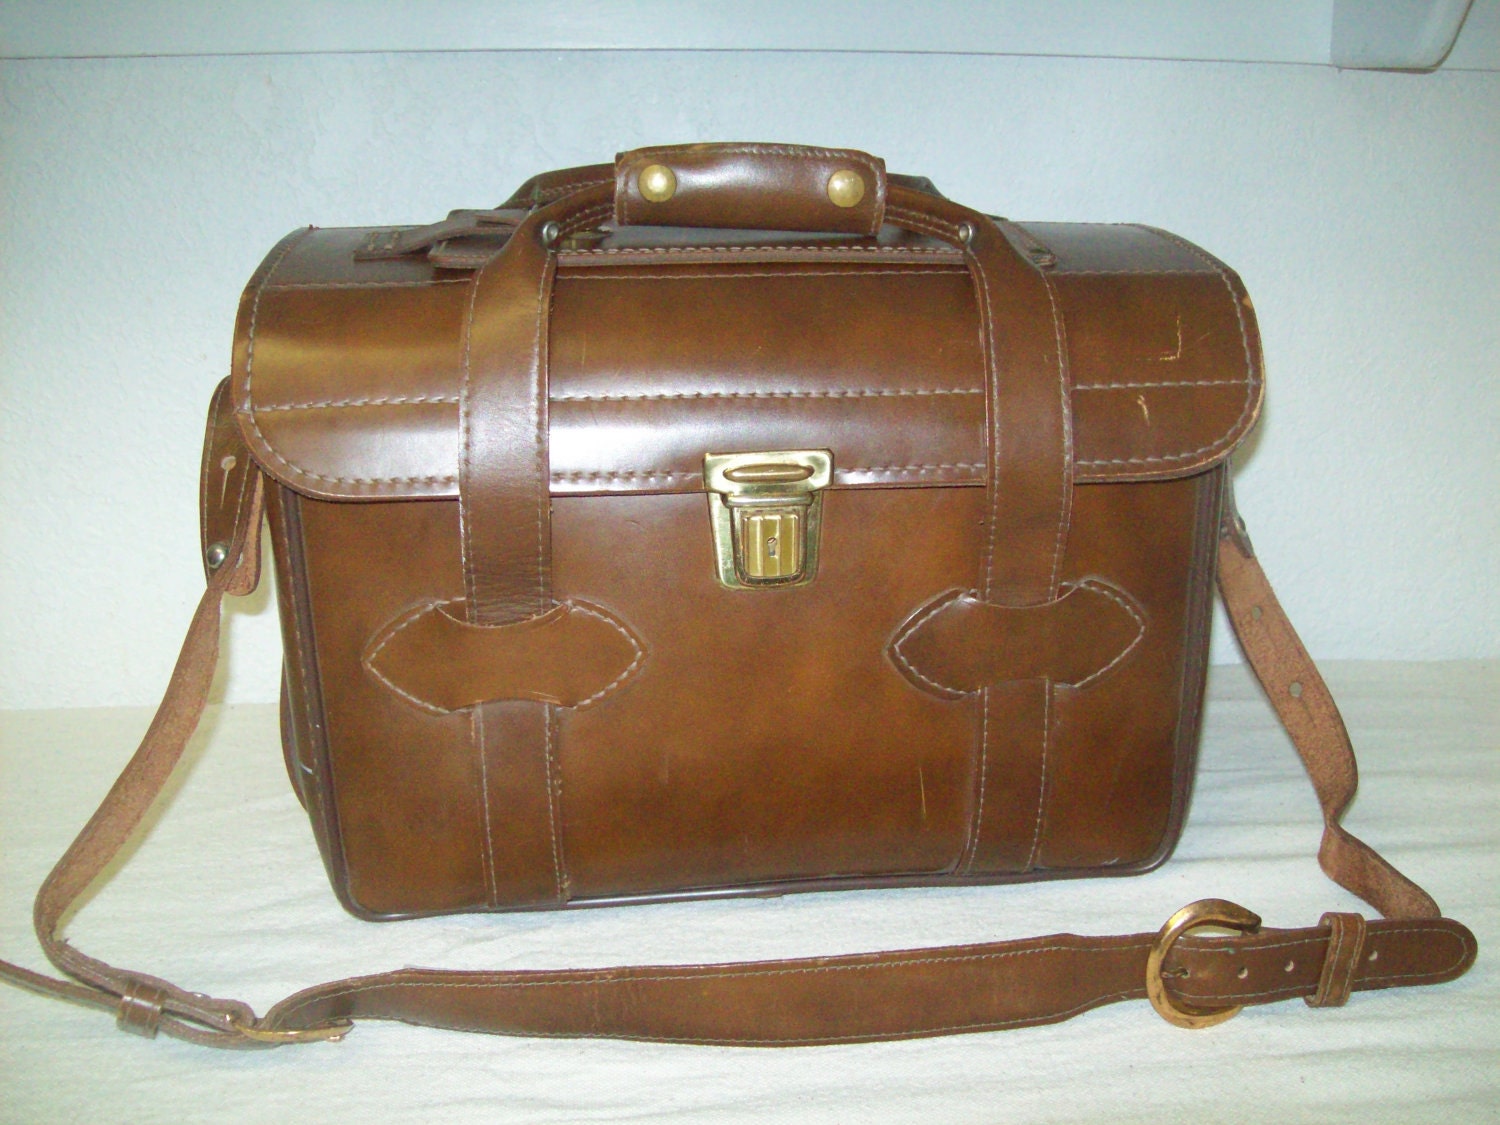 Vintage Leather Camera Bag Shoulder Bag Satchel by theartfulcodger